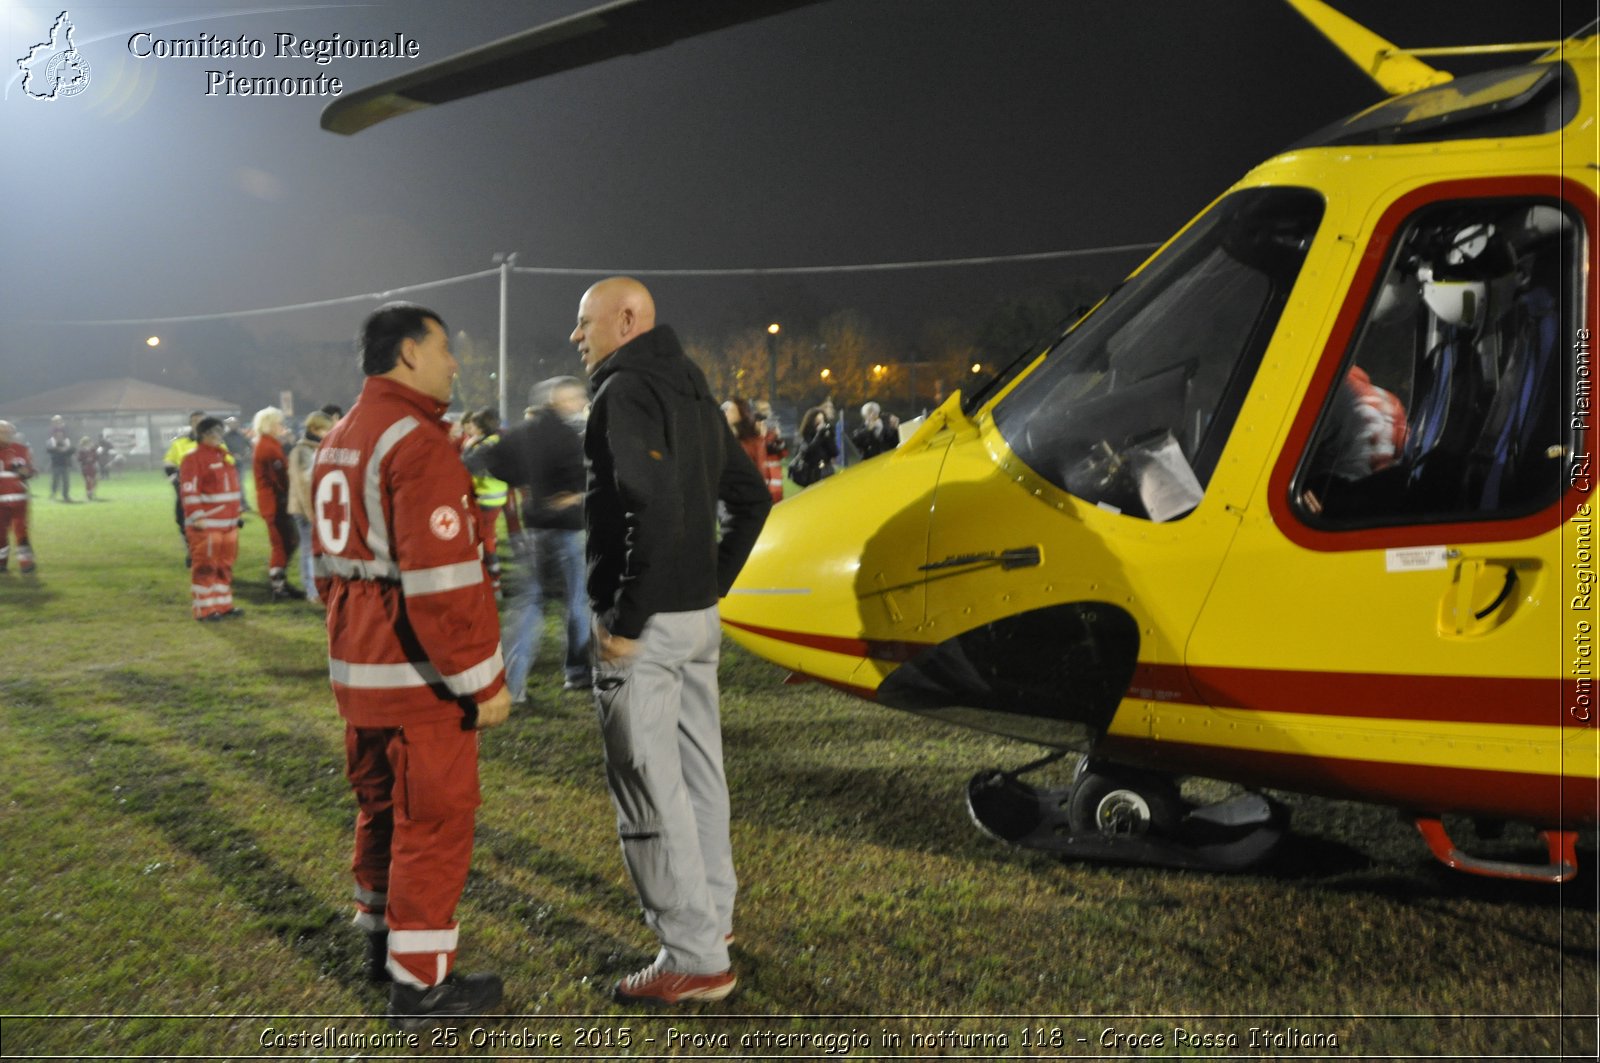 Castellamonte 25 Ottobre 2015 - Prova atterraggio in notturna 118 - Croce Rossa Italiana- Comitato Regionale del Piemonte